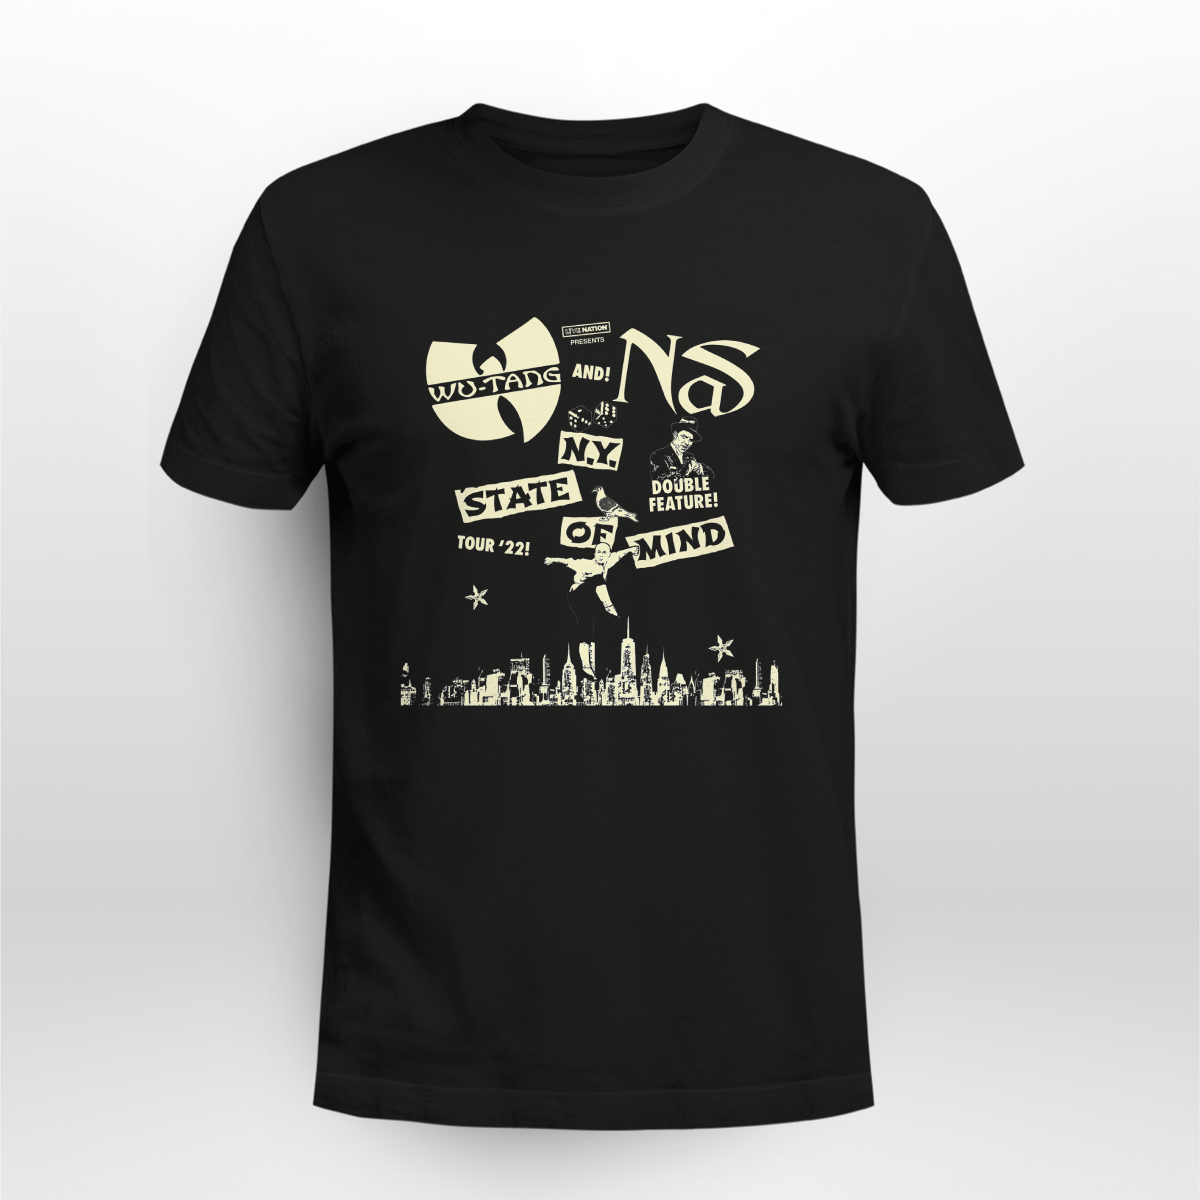 Wu-tang Clan & Nas New York State of Mind Tour Black T-shirt